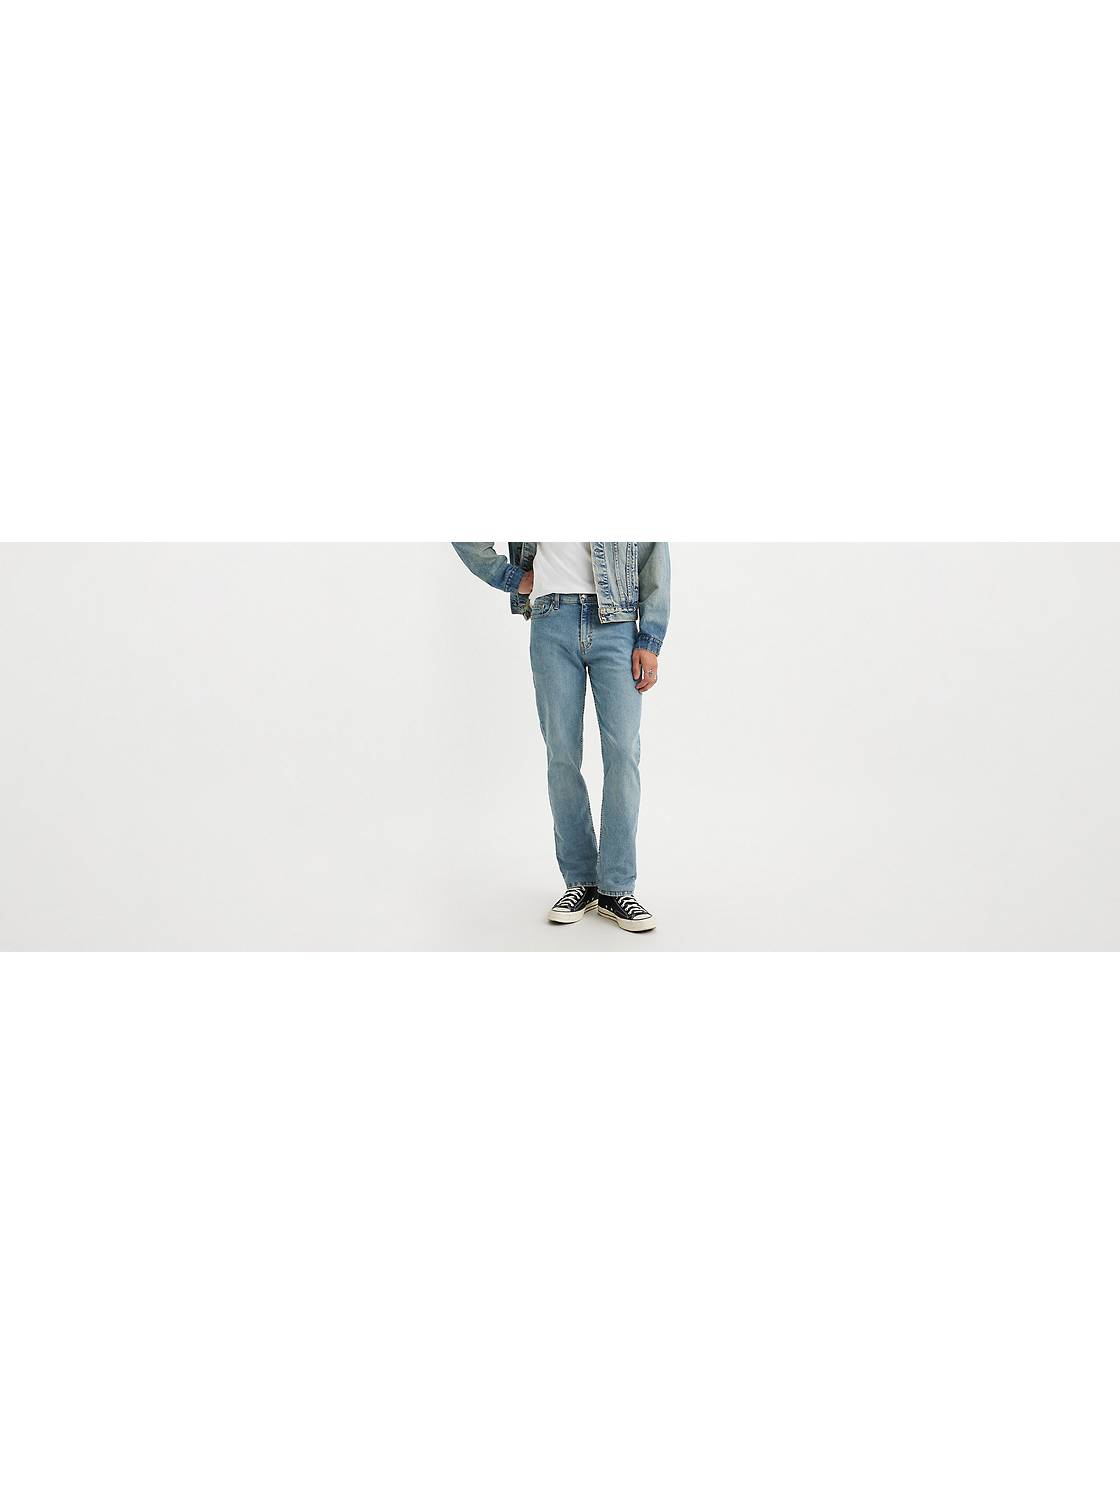 Seaport Distraktion kommando Levi's® 511 - Shop Slim Fit Jeans for Men | Levi's® US